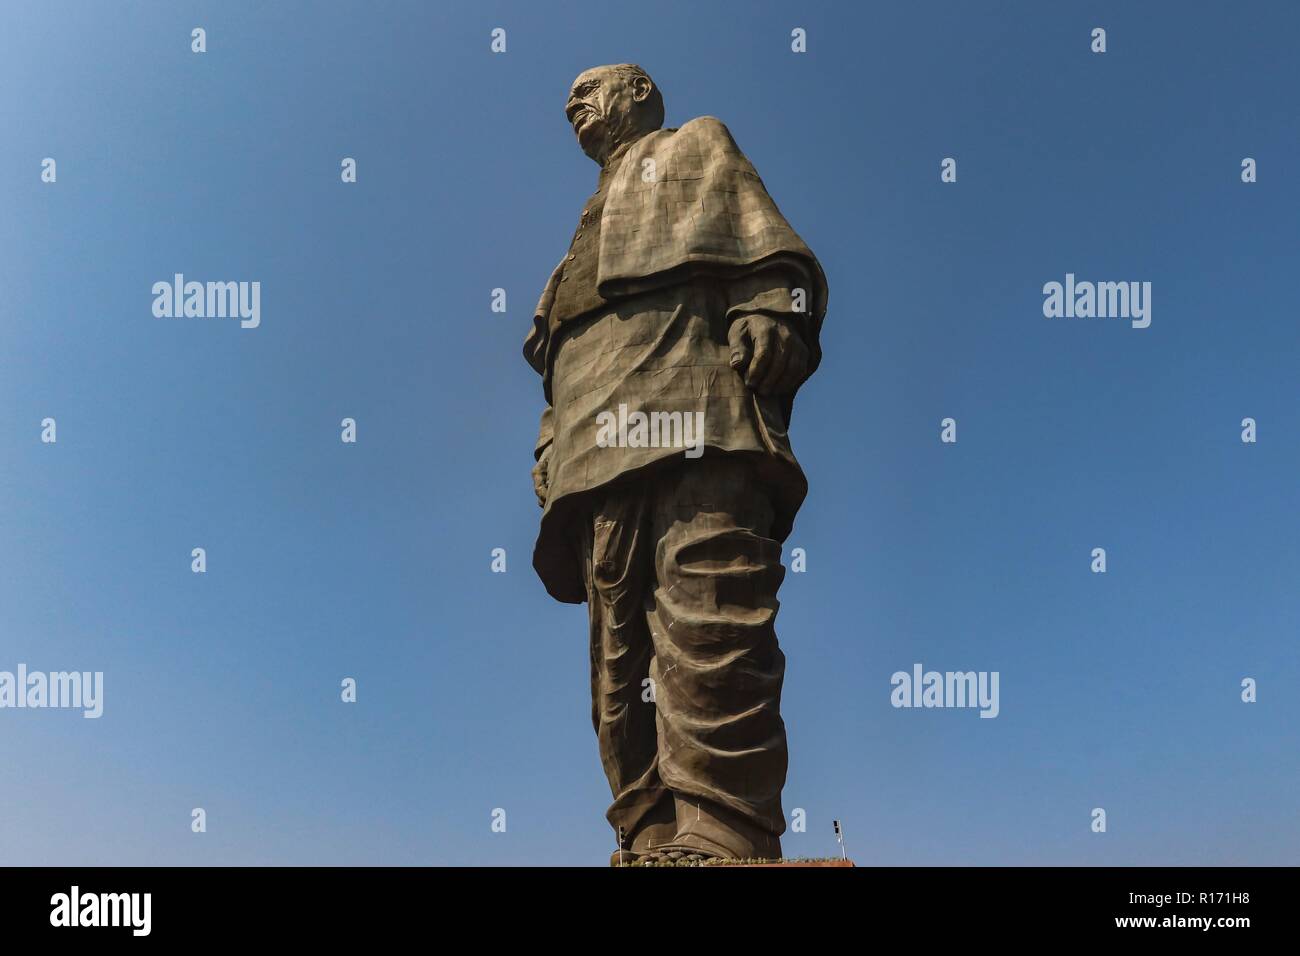 "Tatue de unidad", la estatua más alta del mundo con una altura de 182 metros, el líder de la independencia india Sardar Vallabhai Patel-Narmada//India de Gujarat Foto de stock